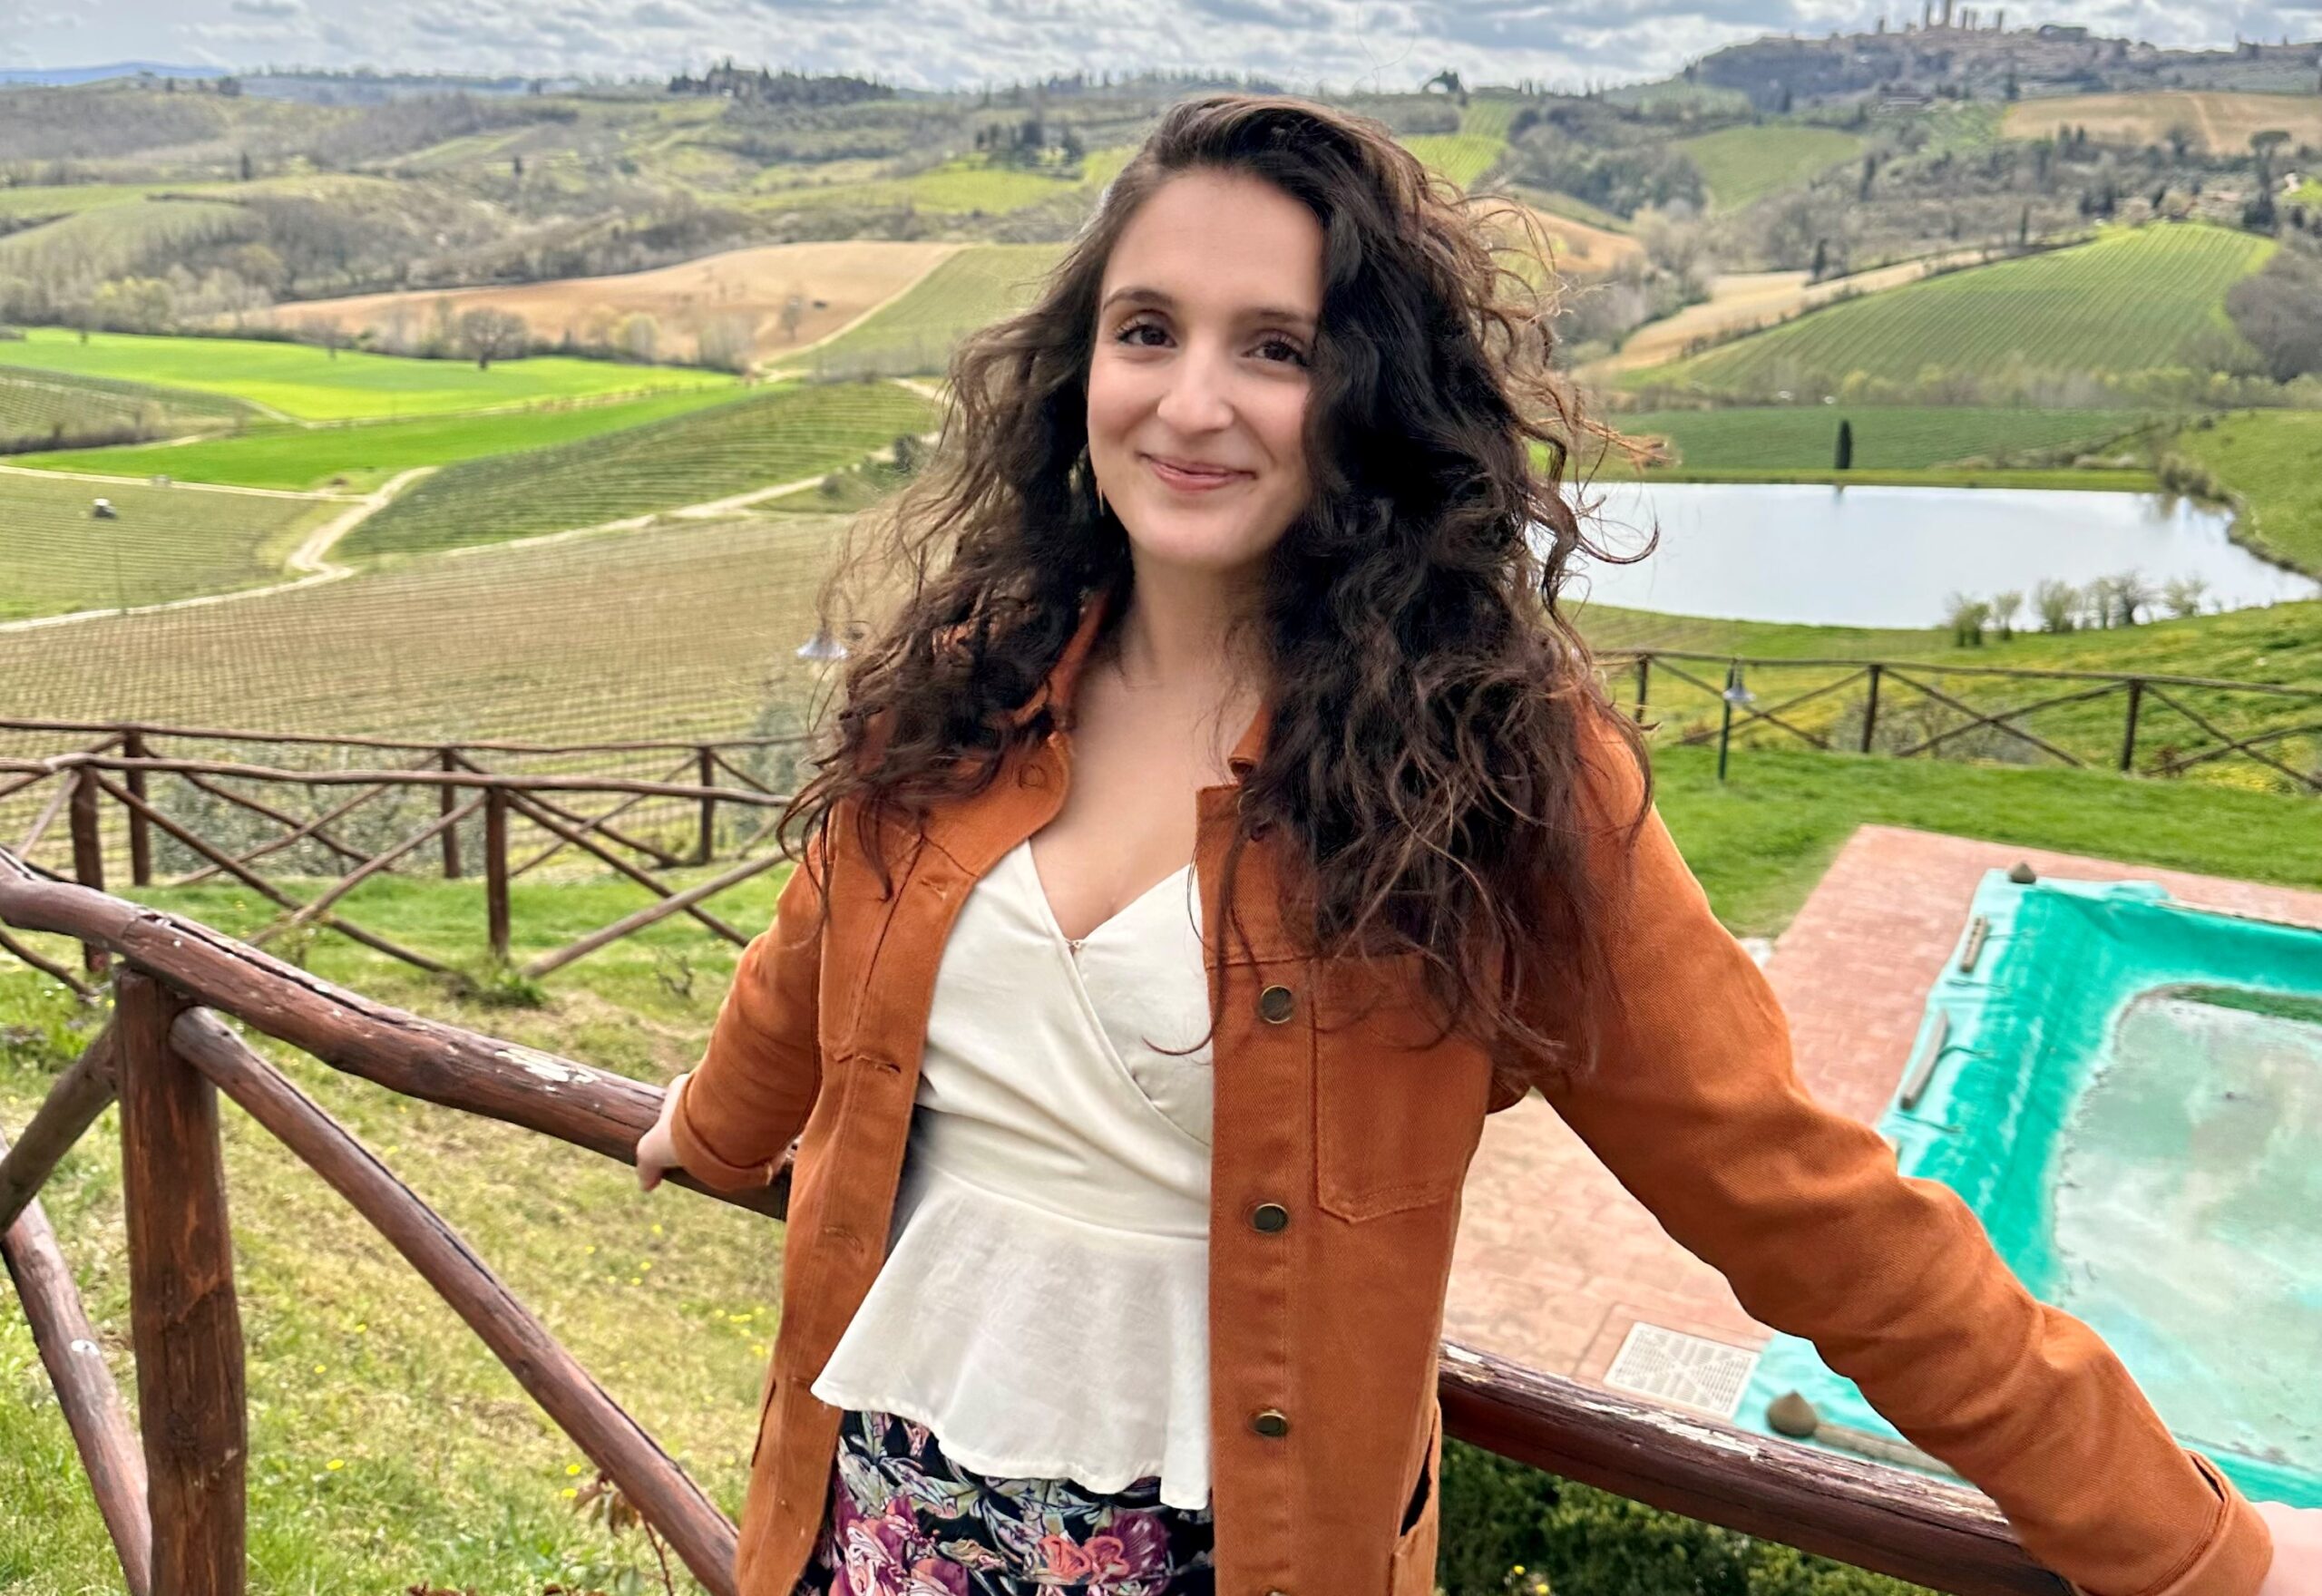 Gabrielle Caravetta at a Tuscan vineyard in San Gimignano, Italy